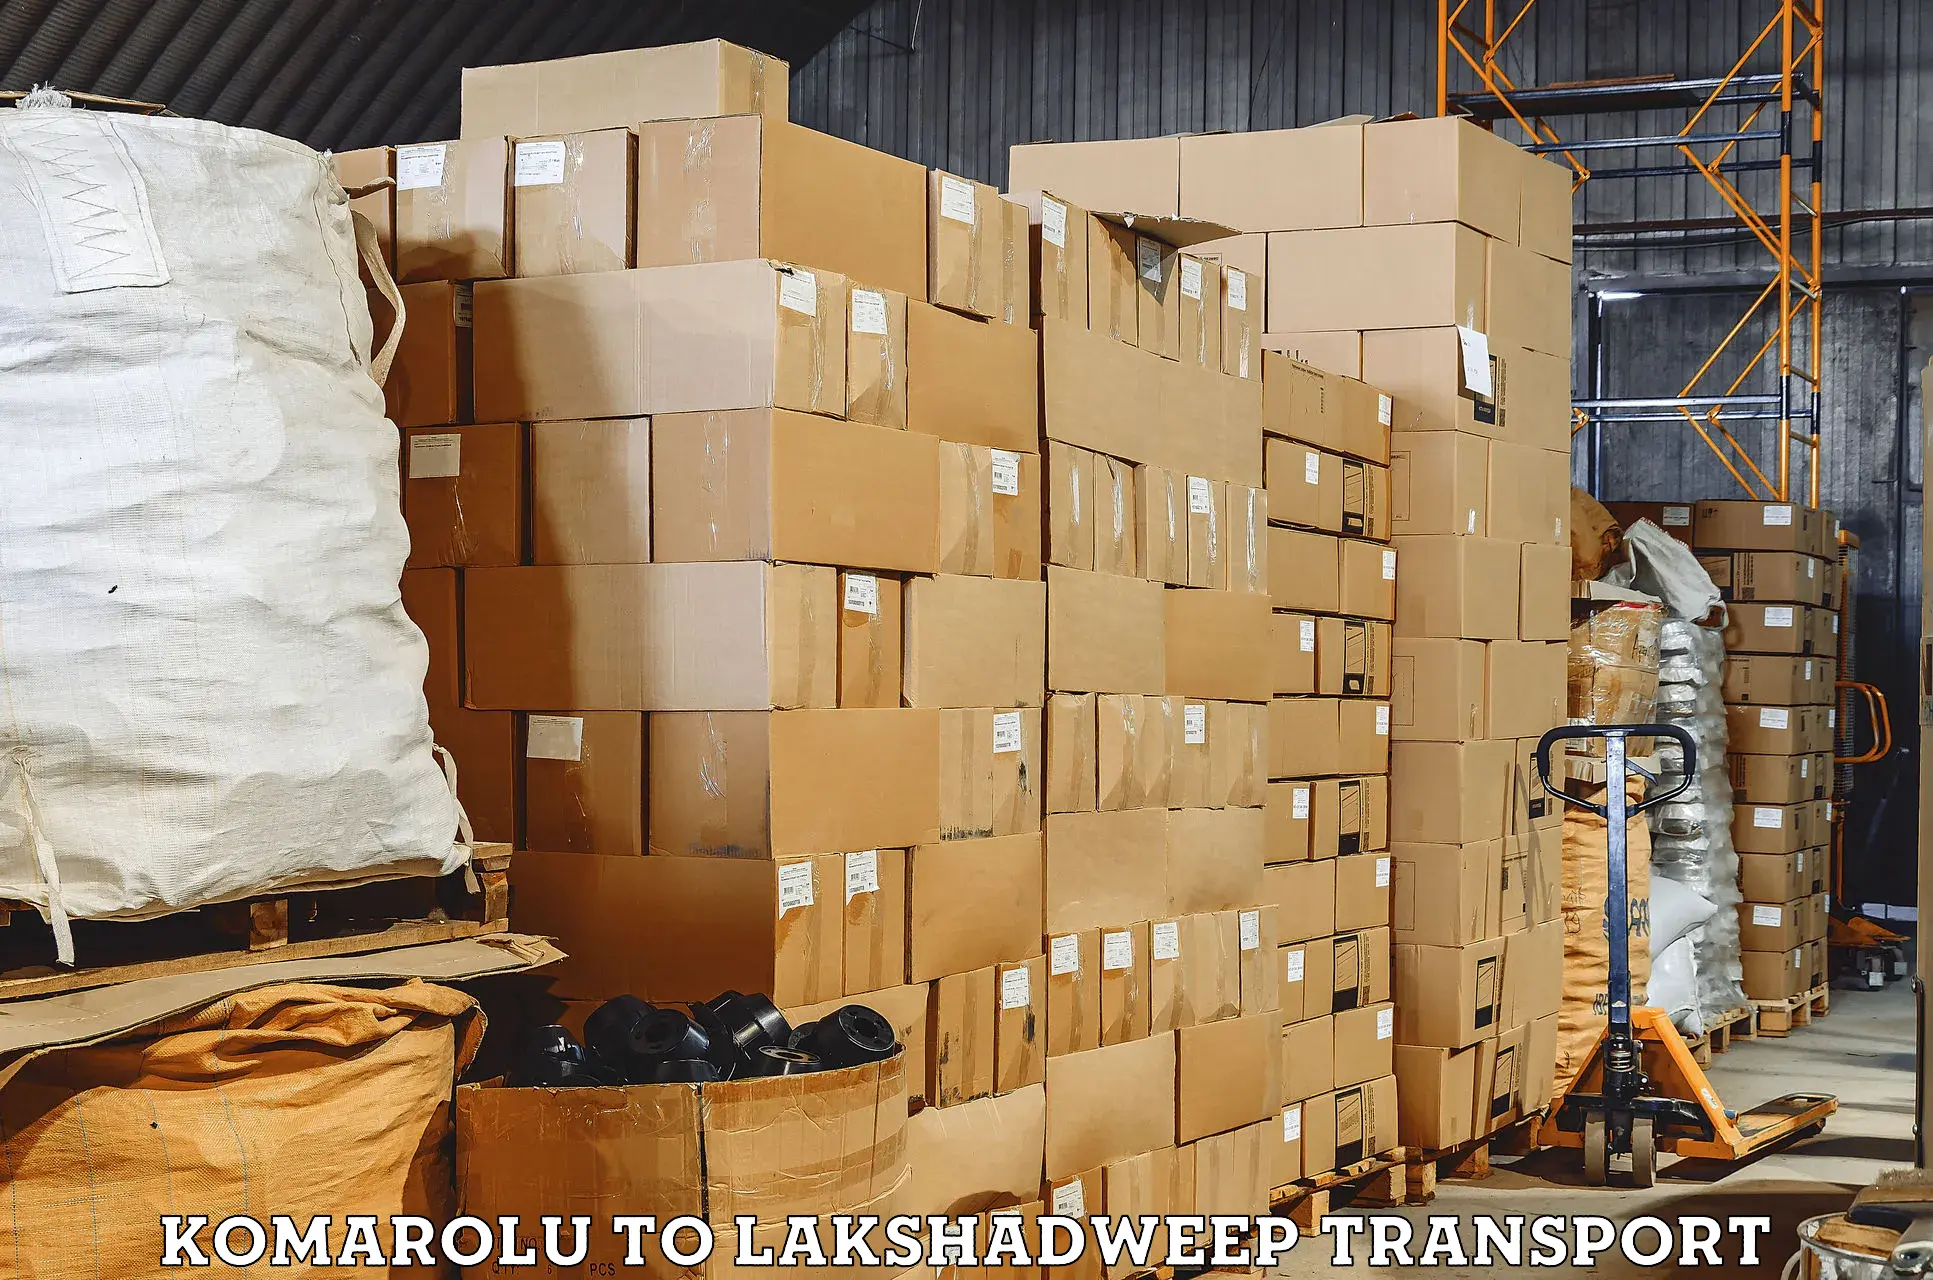 Package delivery services Komarolu to Lakshadweep